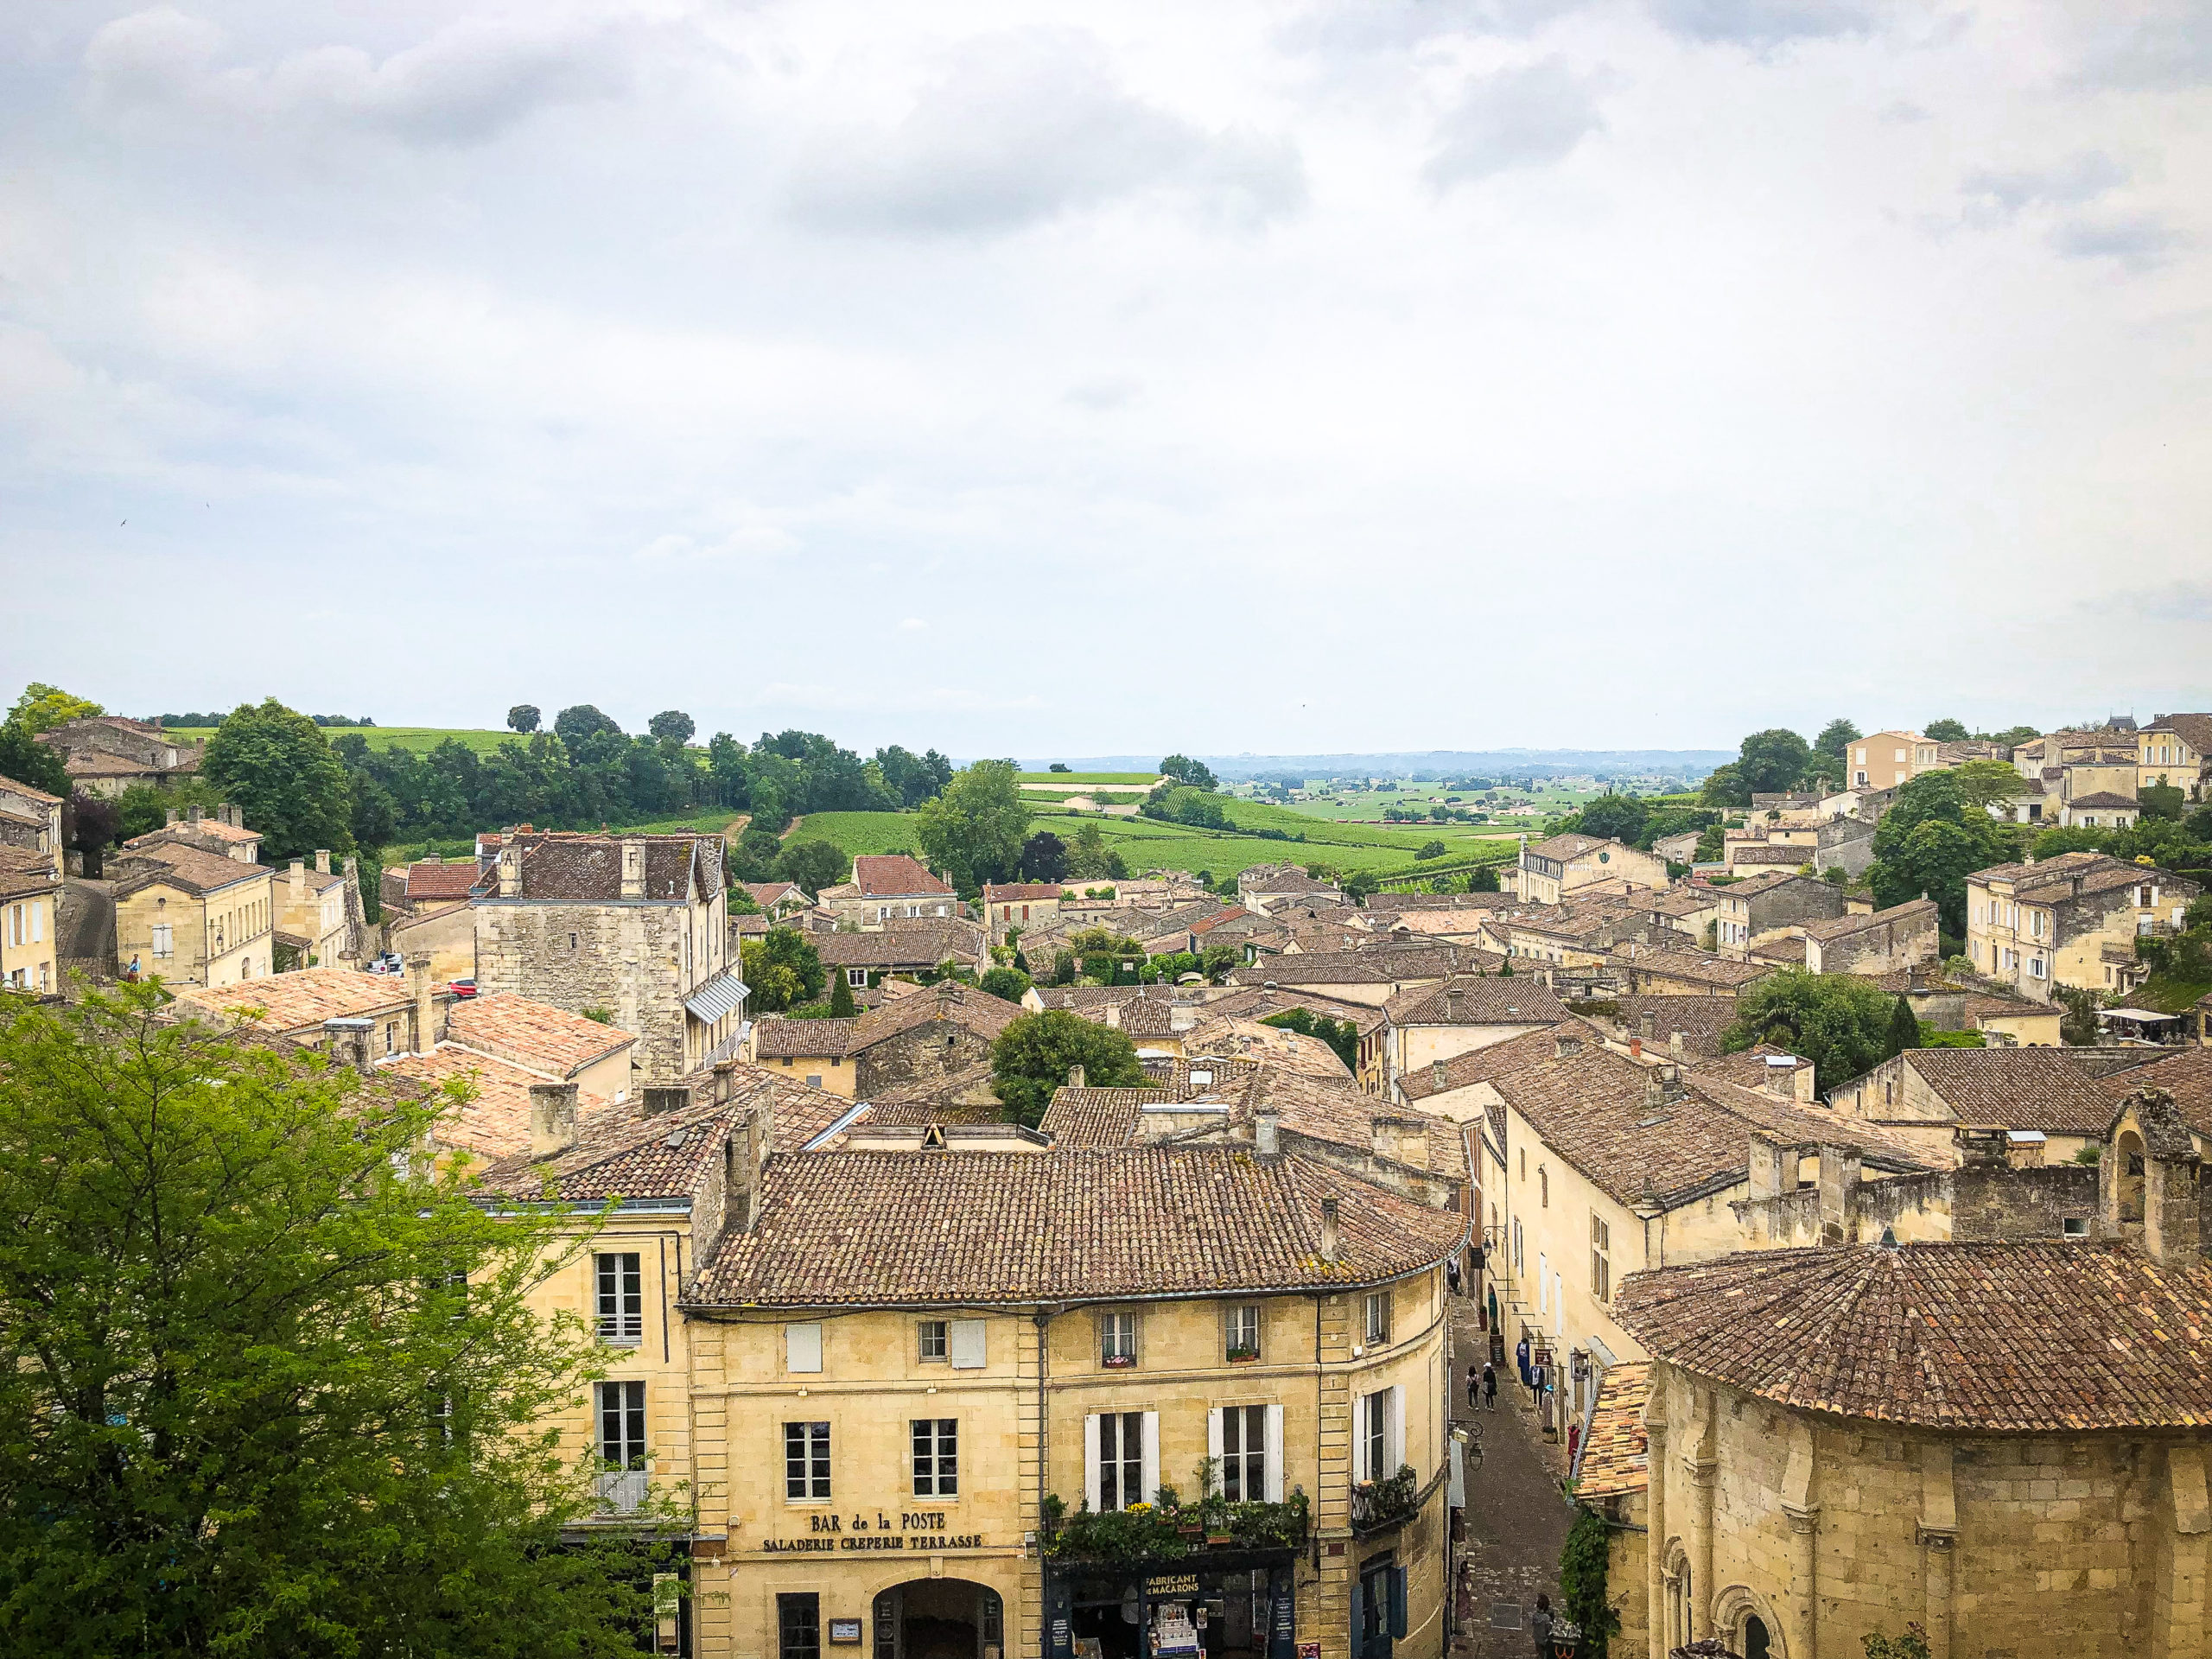 View of the village of Saint-Emilion near Bordeaux